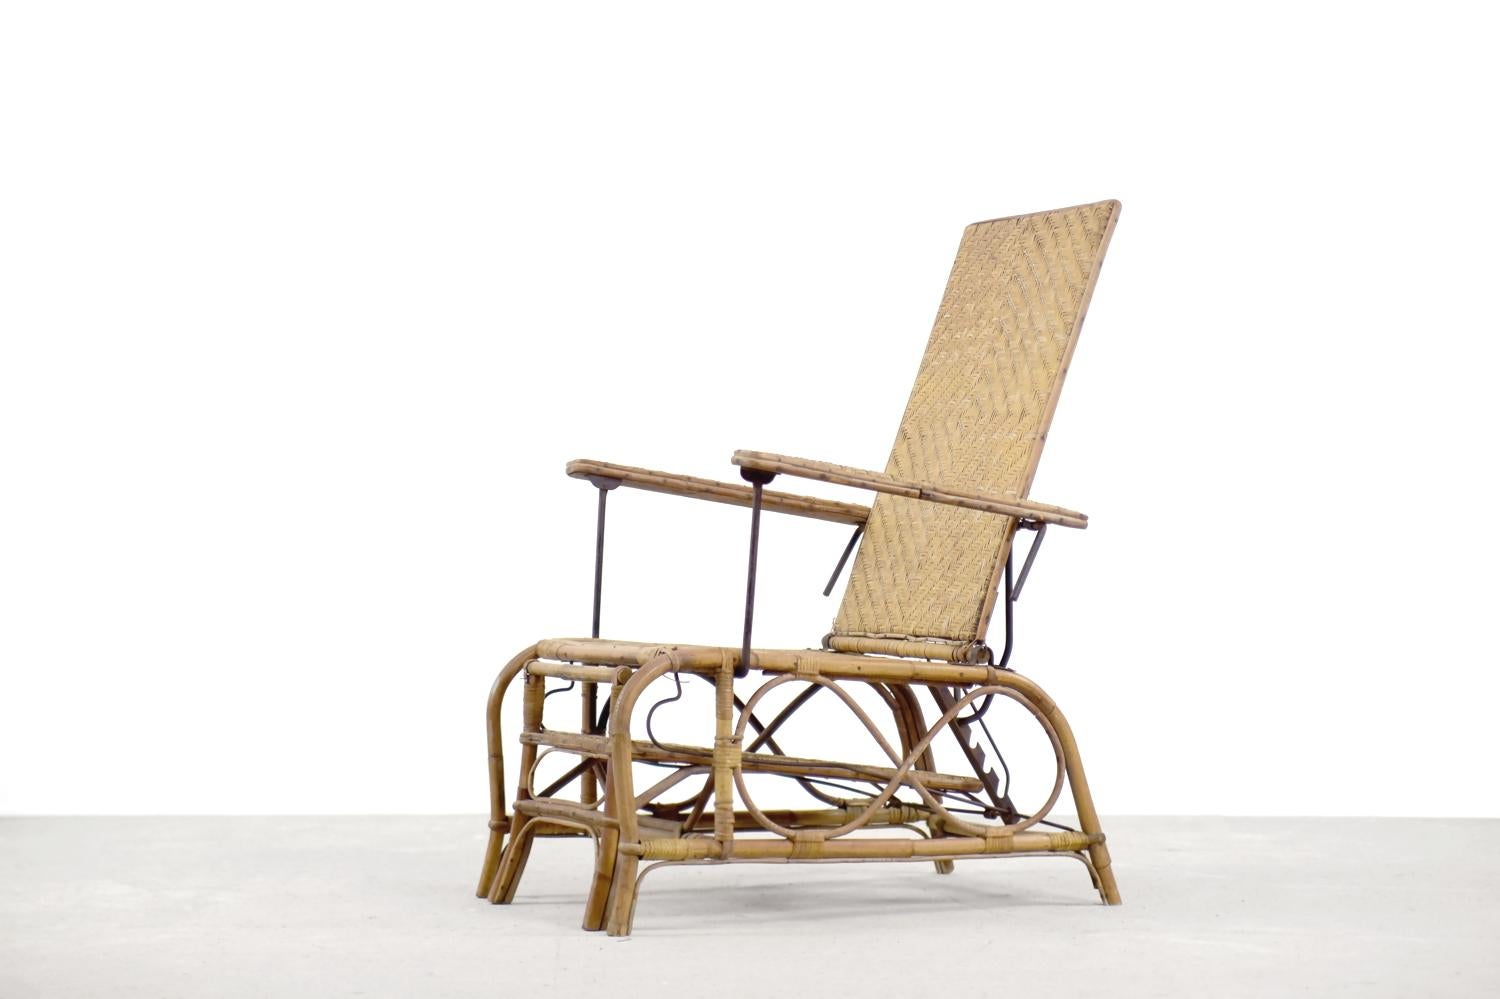 Ce fauteuil de style Bauhaus a été conçu par Erich Dieckmann en Allemagne dans les années 1930. Cette chaise est fabriquée à partir de trois types de matériaux : le rotin, le bambou et le métal. L'utilisation de bois dur et de canne à sucre de haute